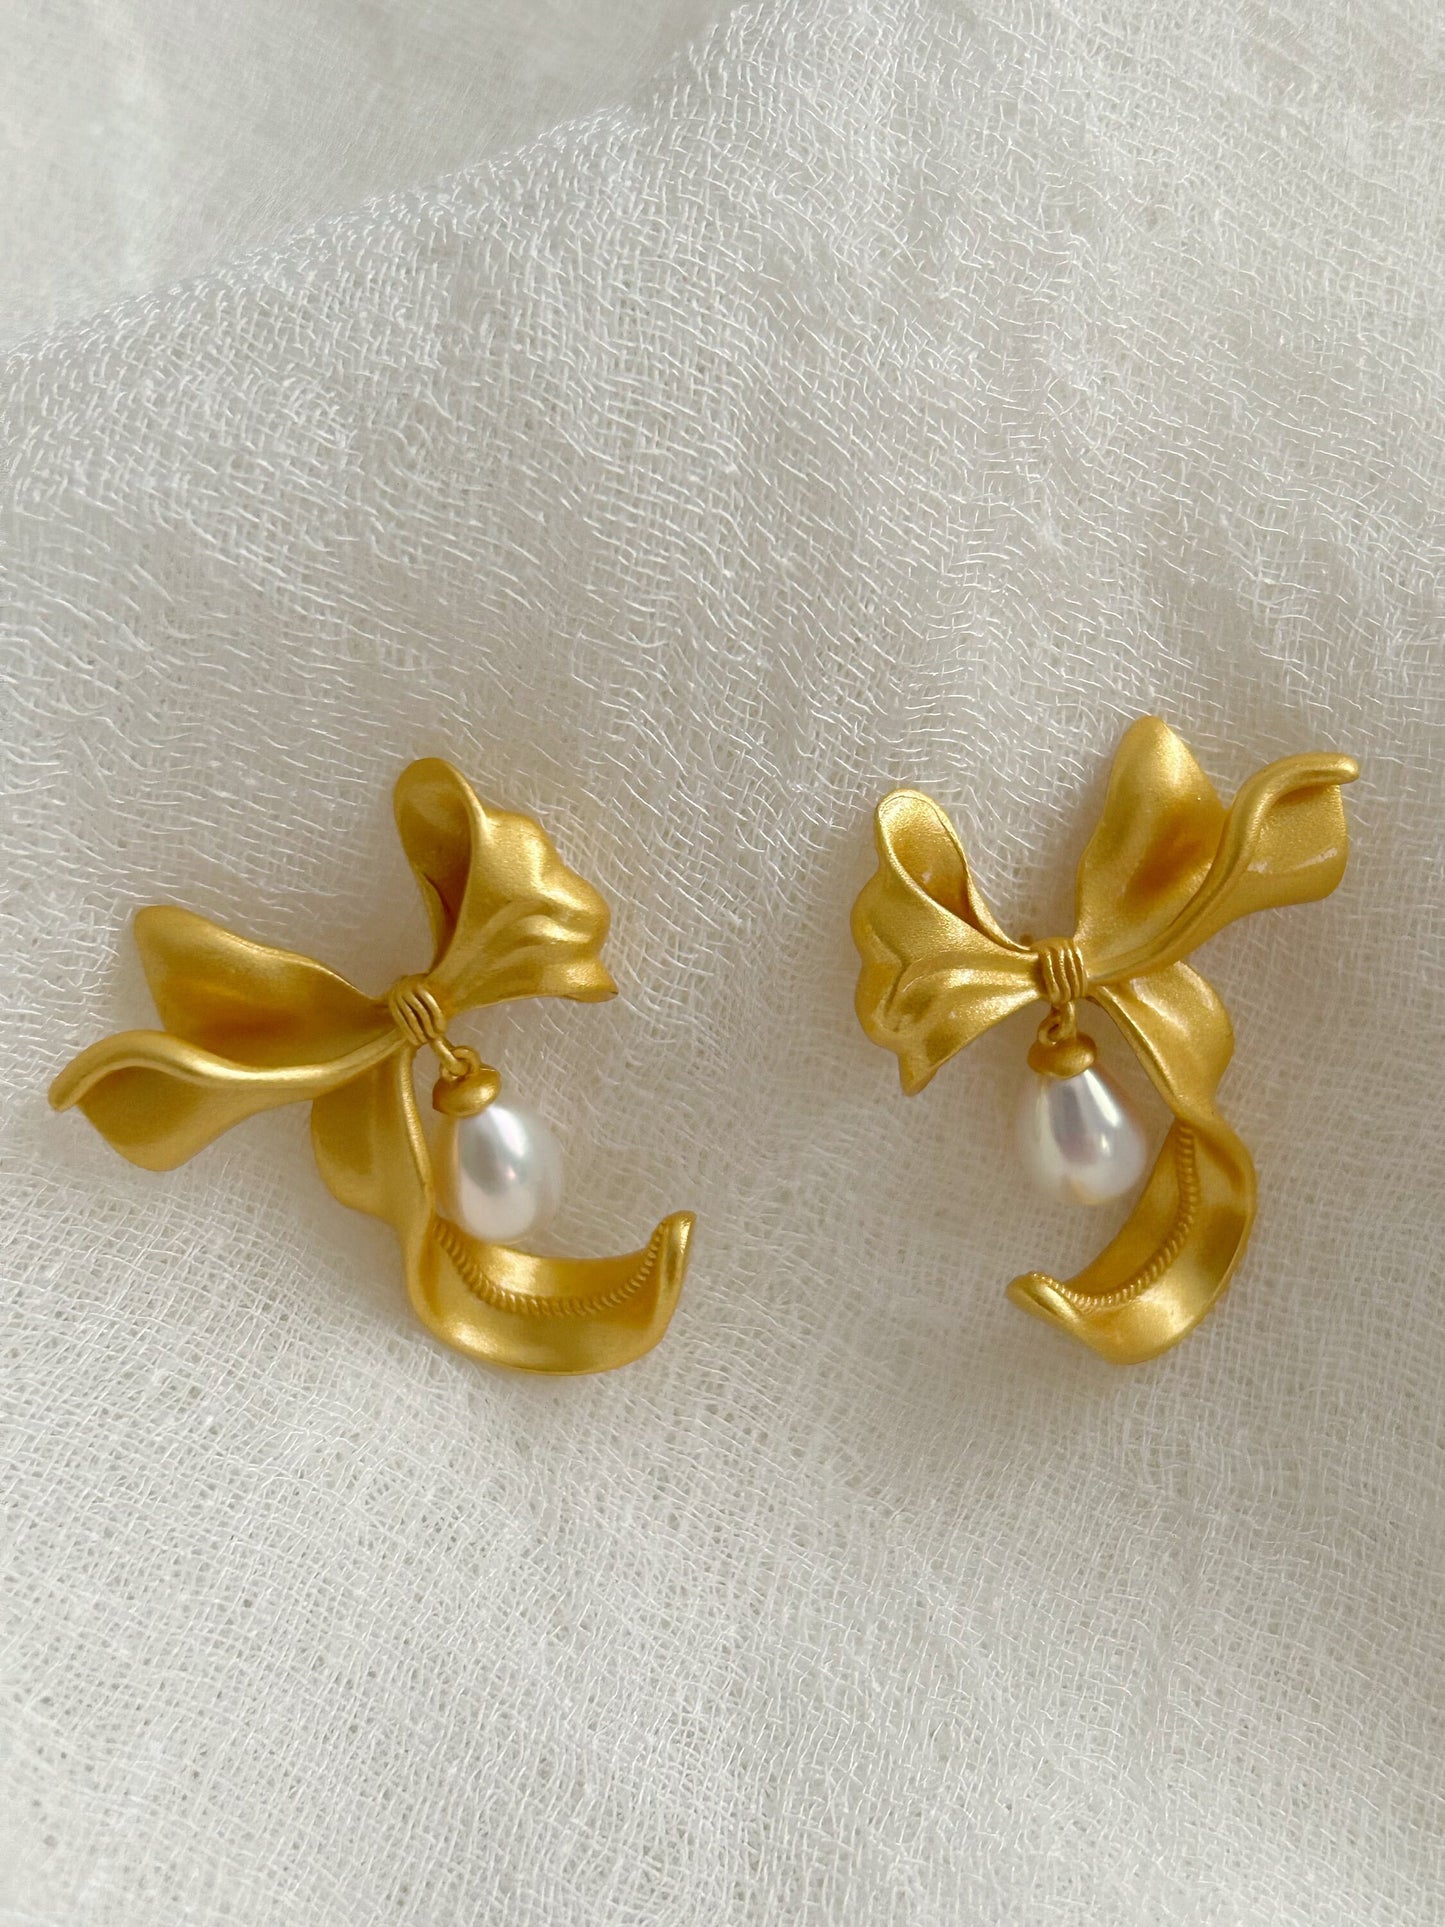 Ribbon earrings, waterdrop pearl earrings, Bow earrings